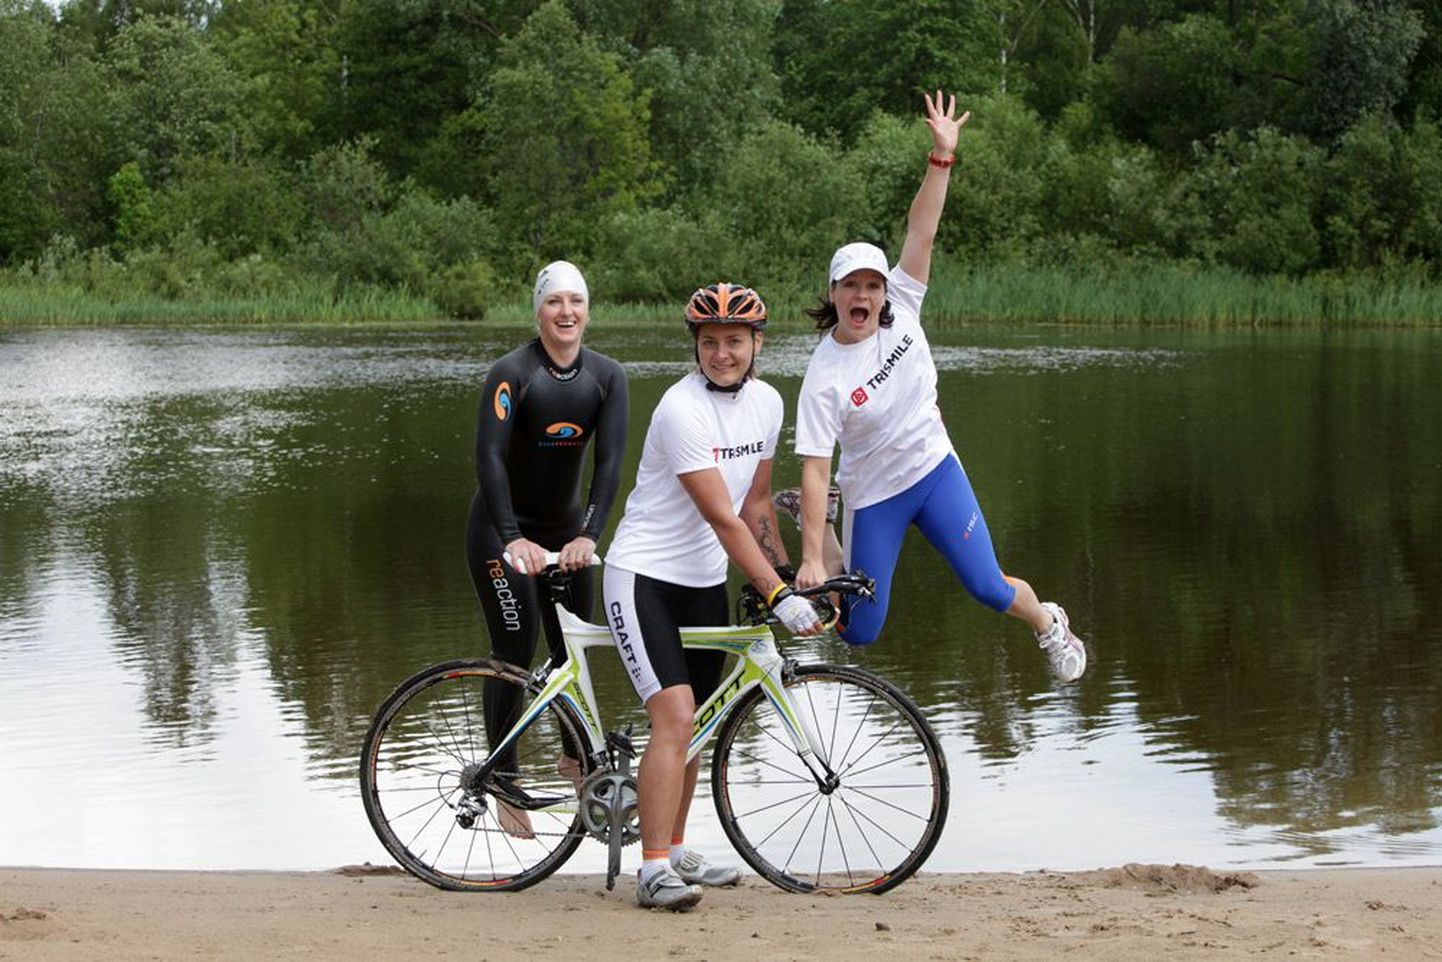 Rõõm pingutusest: Aile Anja (vasakult), Helen Vellau ja Anneli Valge treenivad augusti esimesel nädalavahetusel peetavaks Tristari triatloniks, kus tuleb Pühajärves ujuda 1 km, sõita rattaga 100 km ja joosta 10 km.